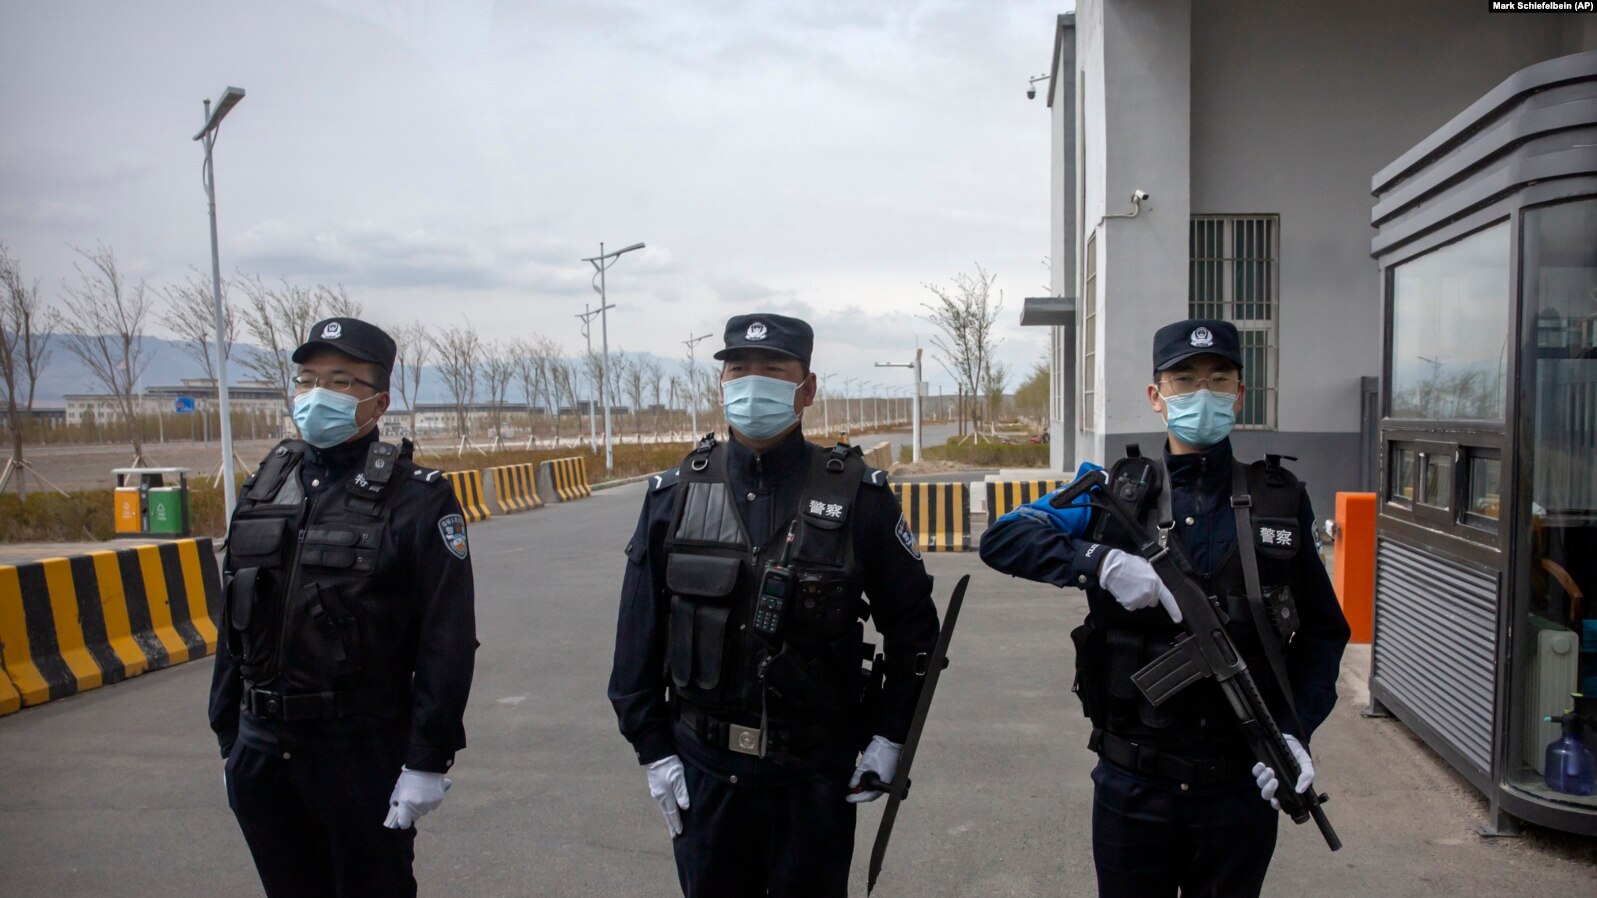 Raporti i ri thotë se Kina ka mbi 100 stacione policore në mbarë botën